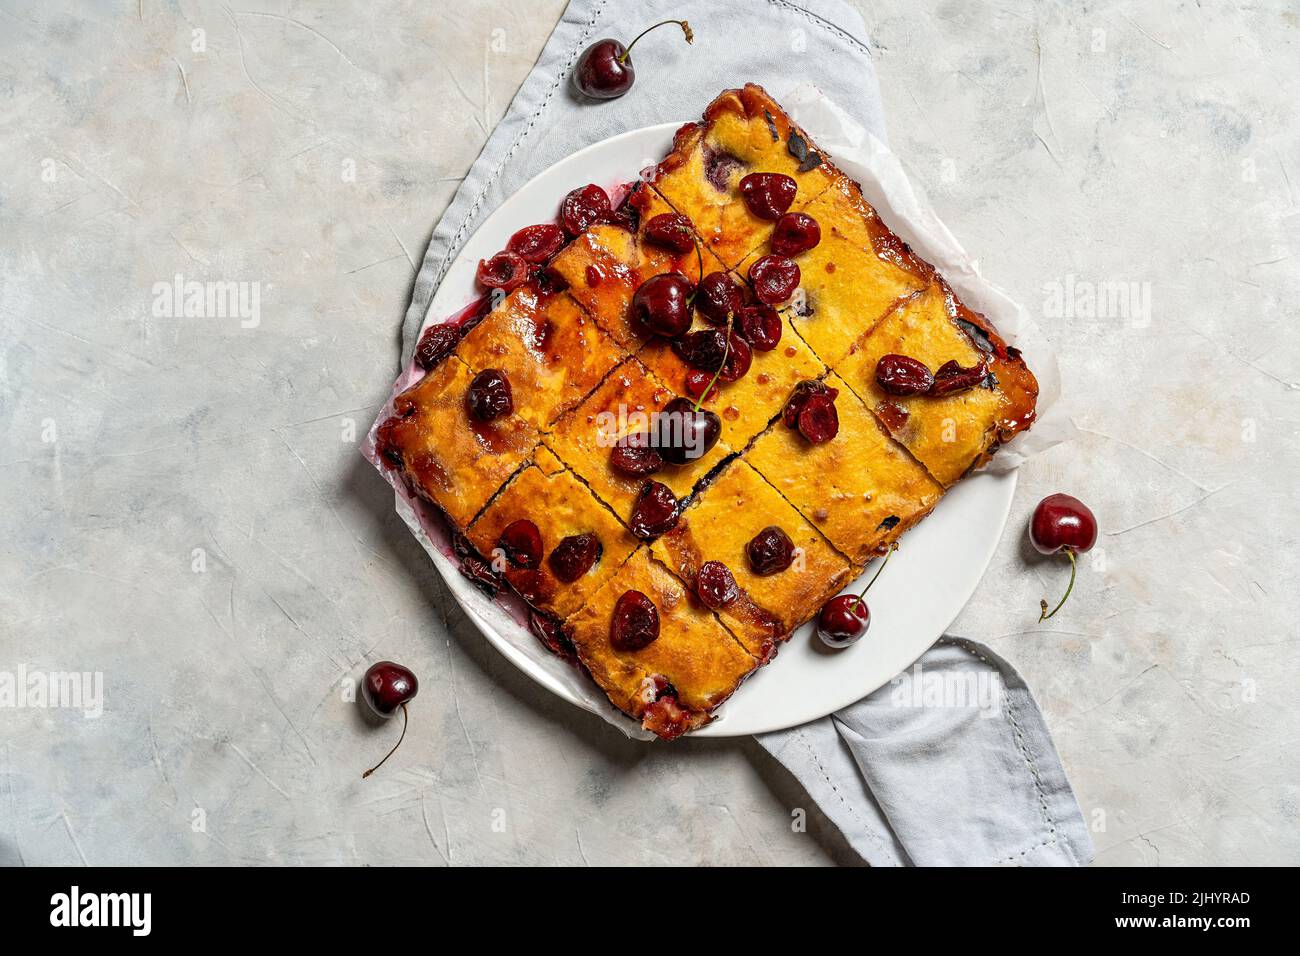 Frisch gebackene süße Kirschkuchen oder roter Brownie-Kuchen auf dem Teller mit Lavendel und rohen Beeren zur Seite. Stockfoto